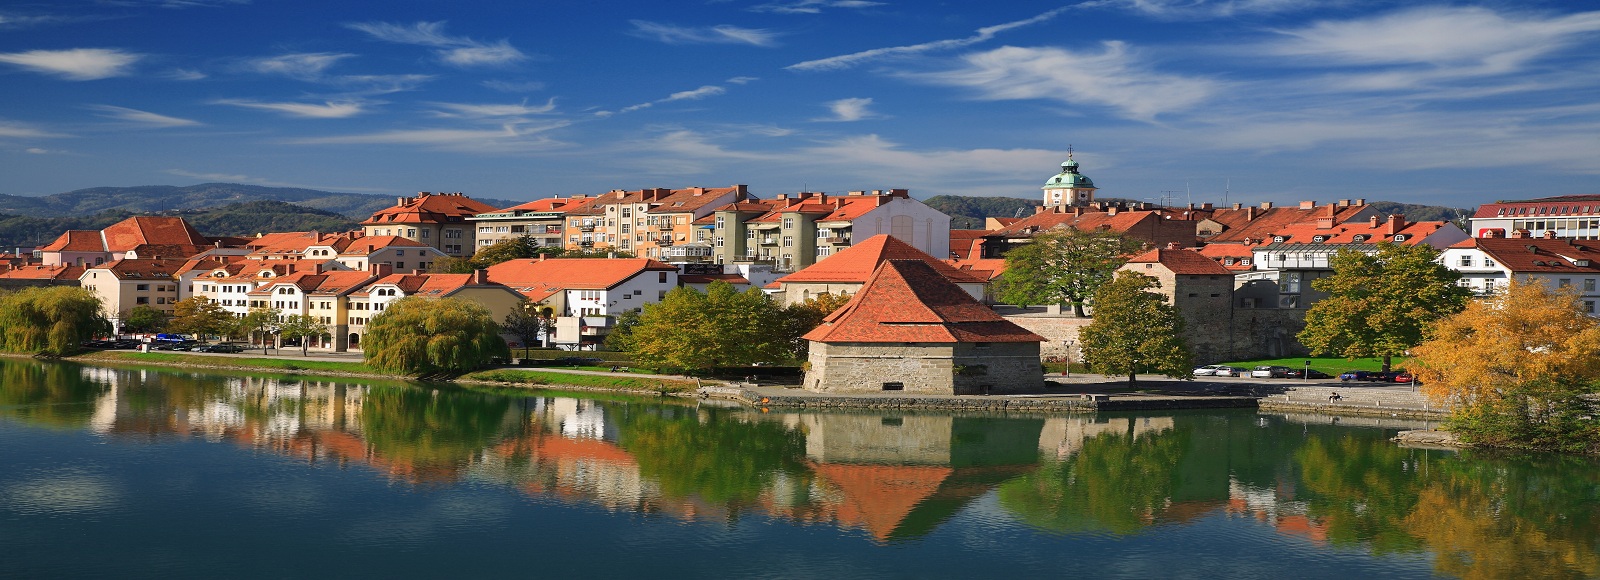 Ofertas de Traslados en Maribor. Traslados económicos en Maribor 